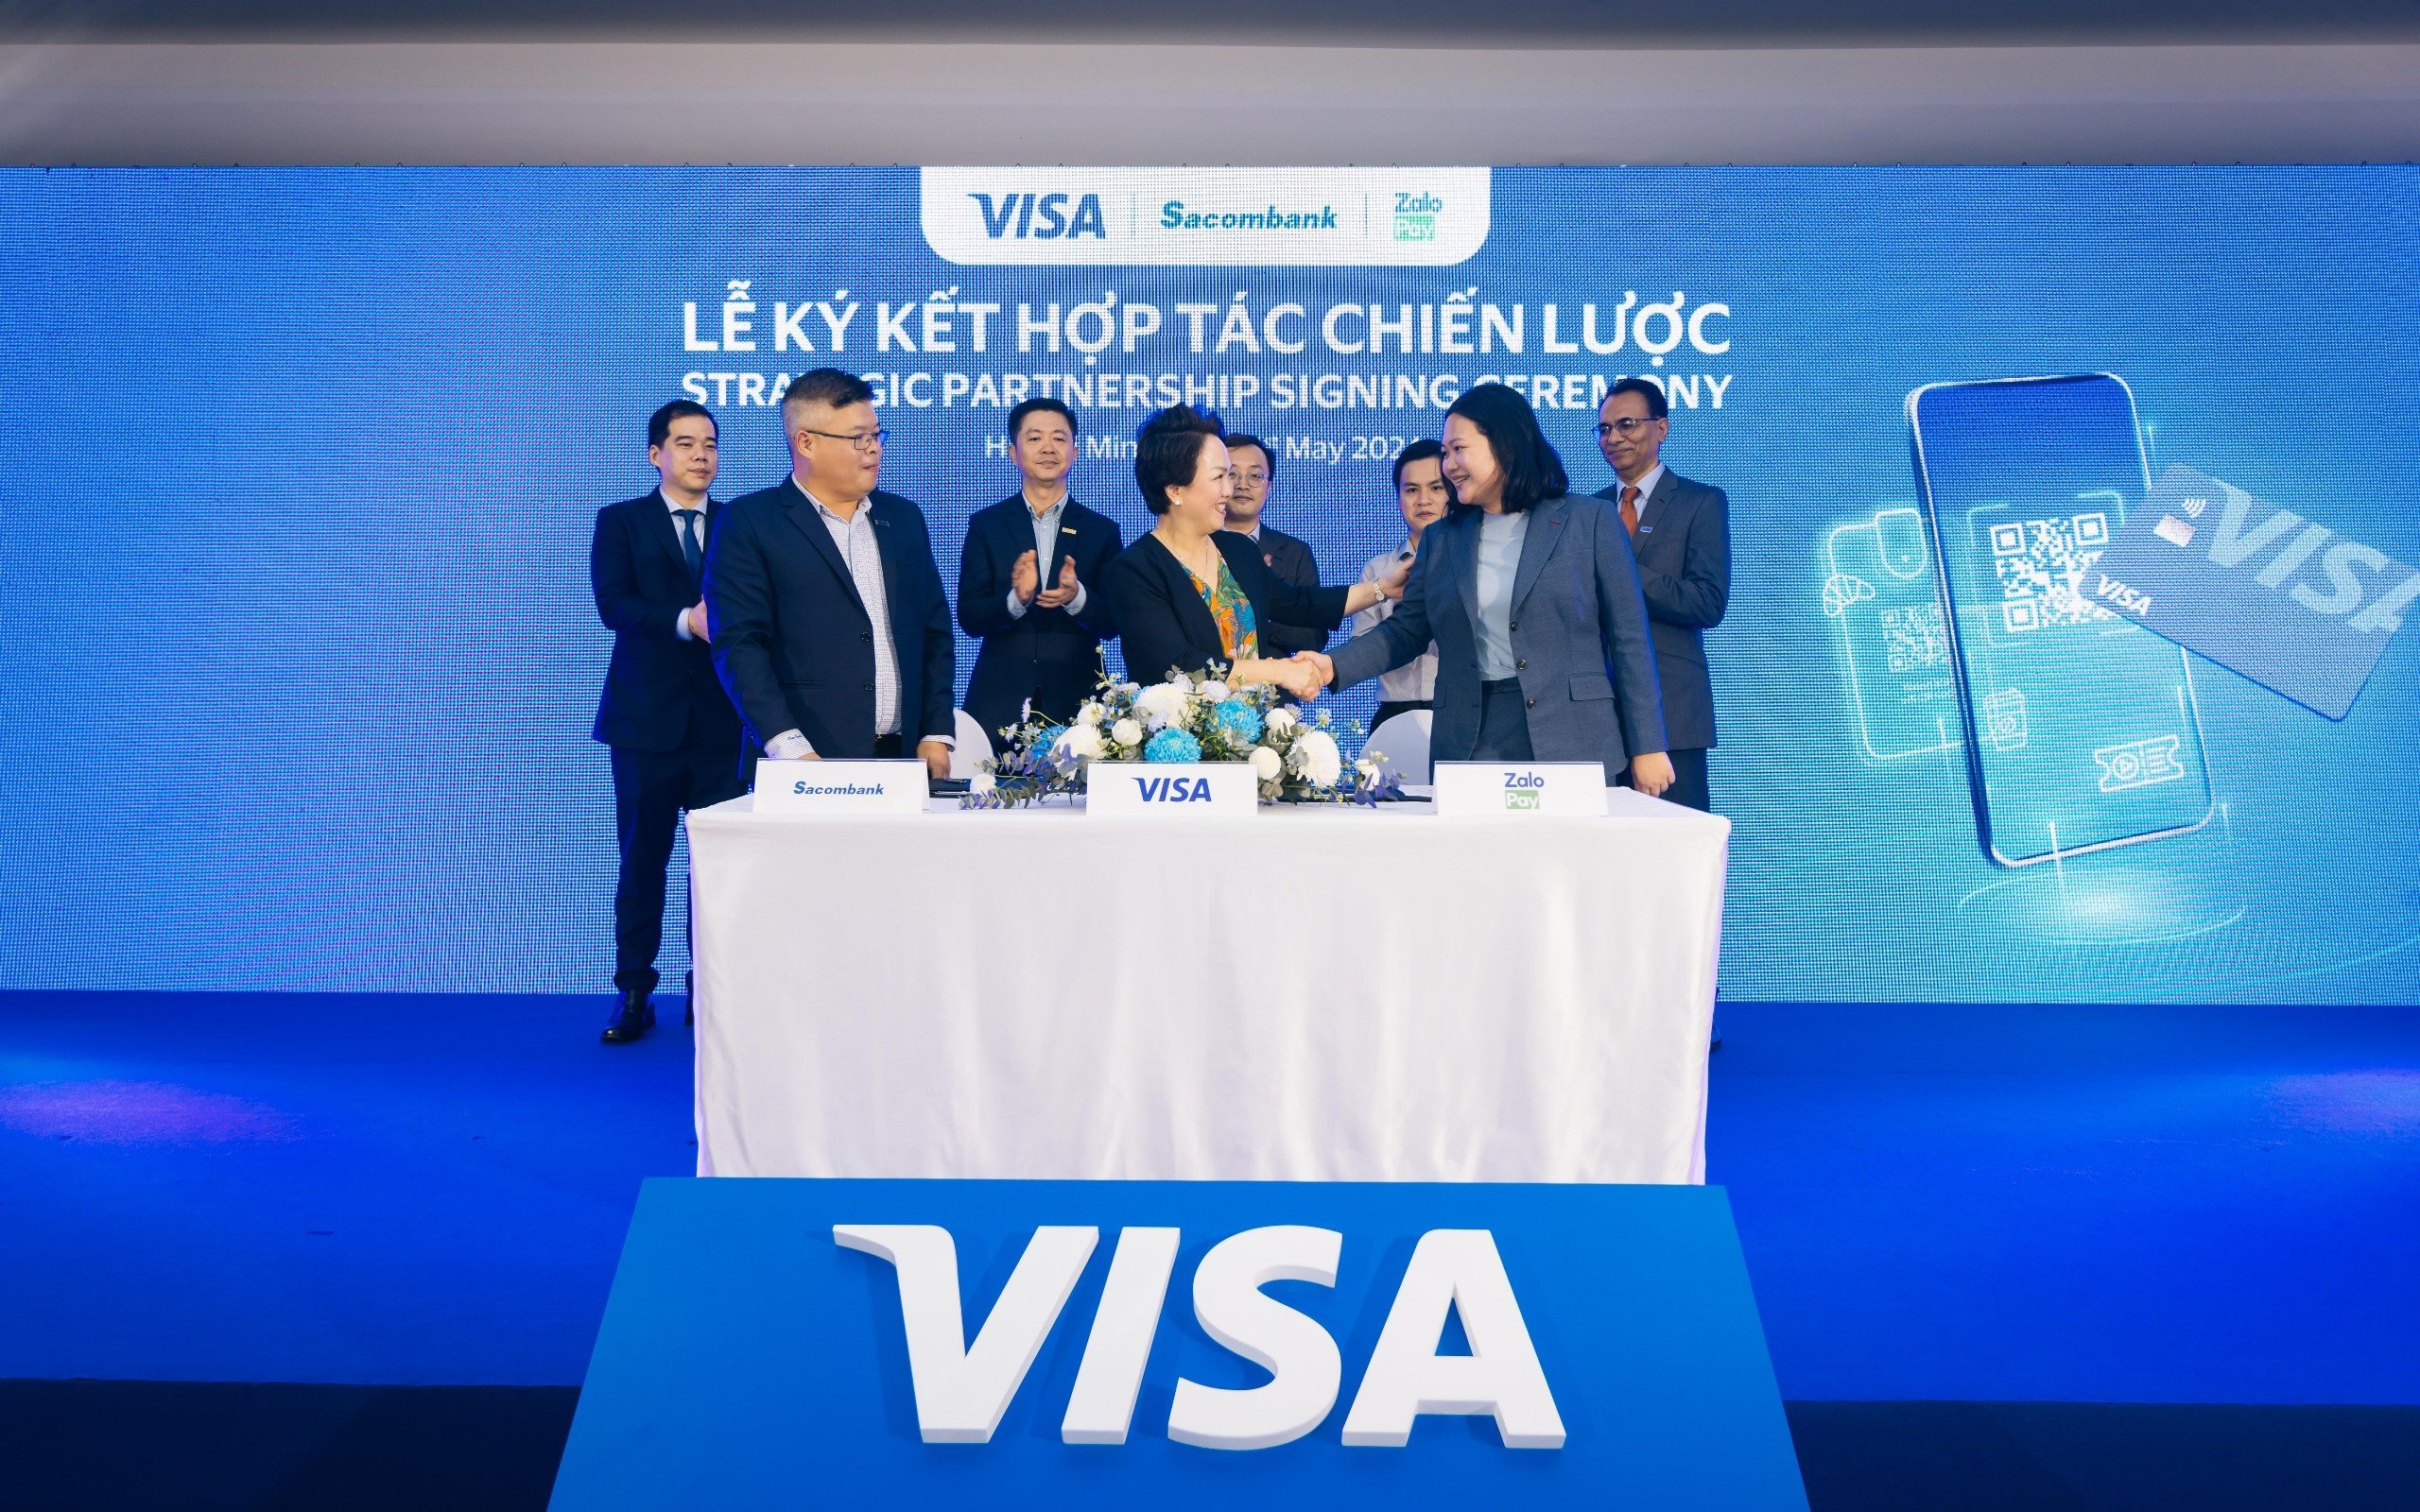 Công ty thanh toán điện tử Visa công bố hợp tác với 3 ví điện tử phổ biến hàng đầu tại Việt Nam – MoMo, VNPAY và ZaloPay